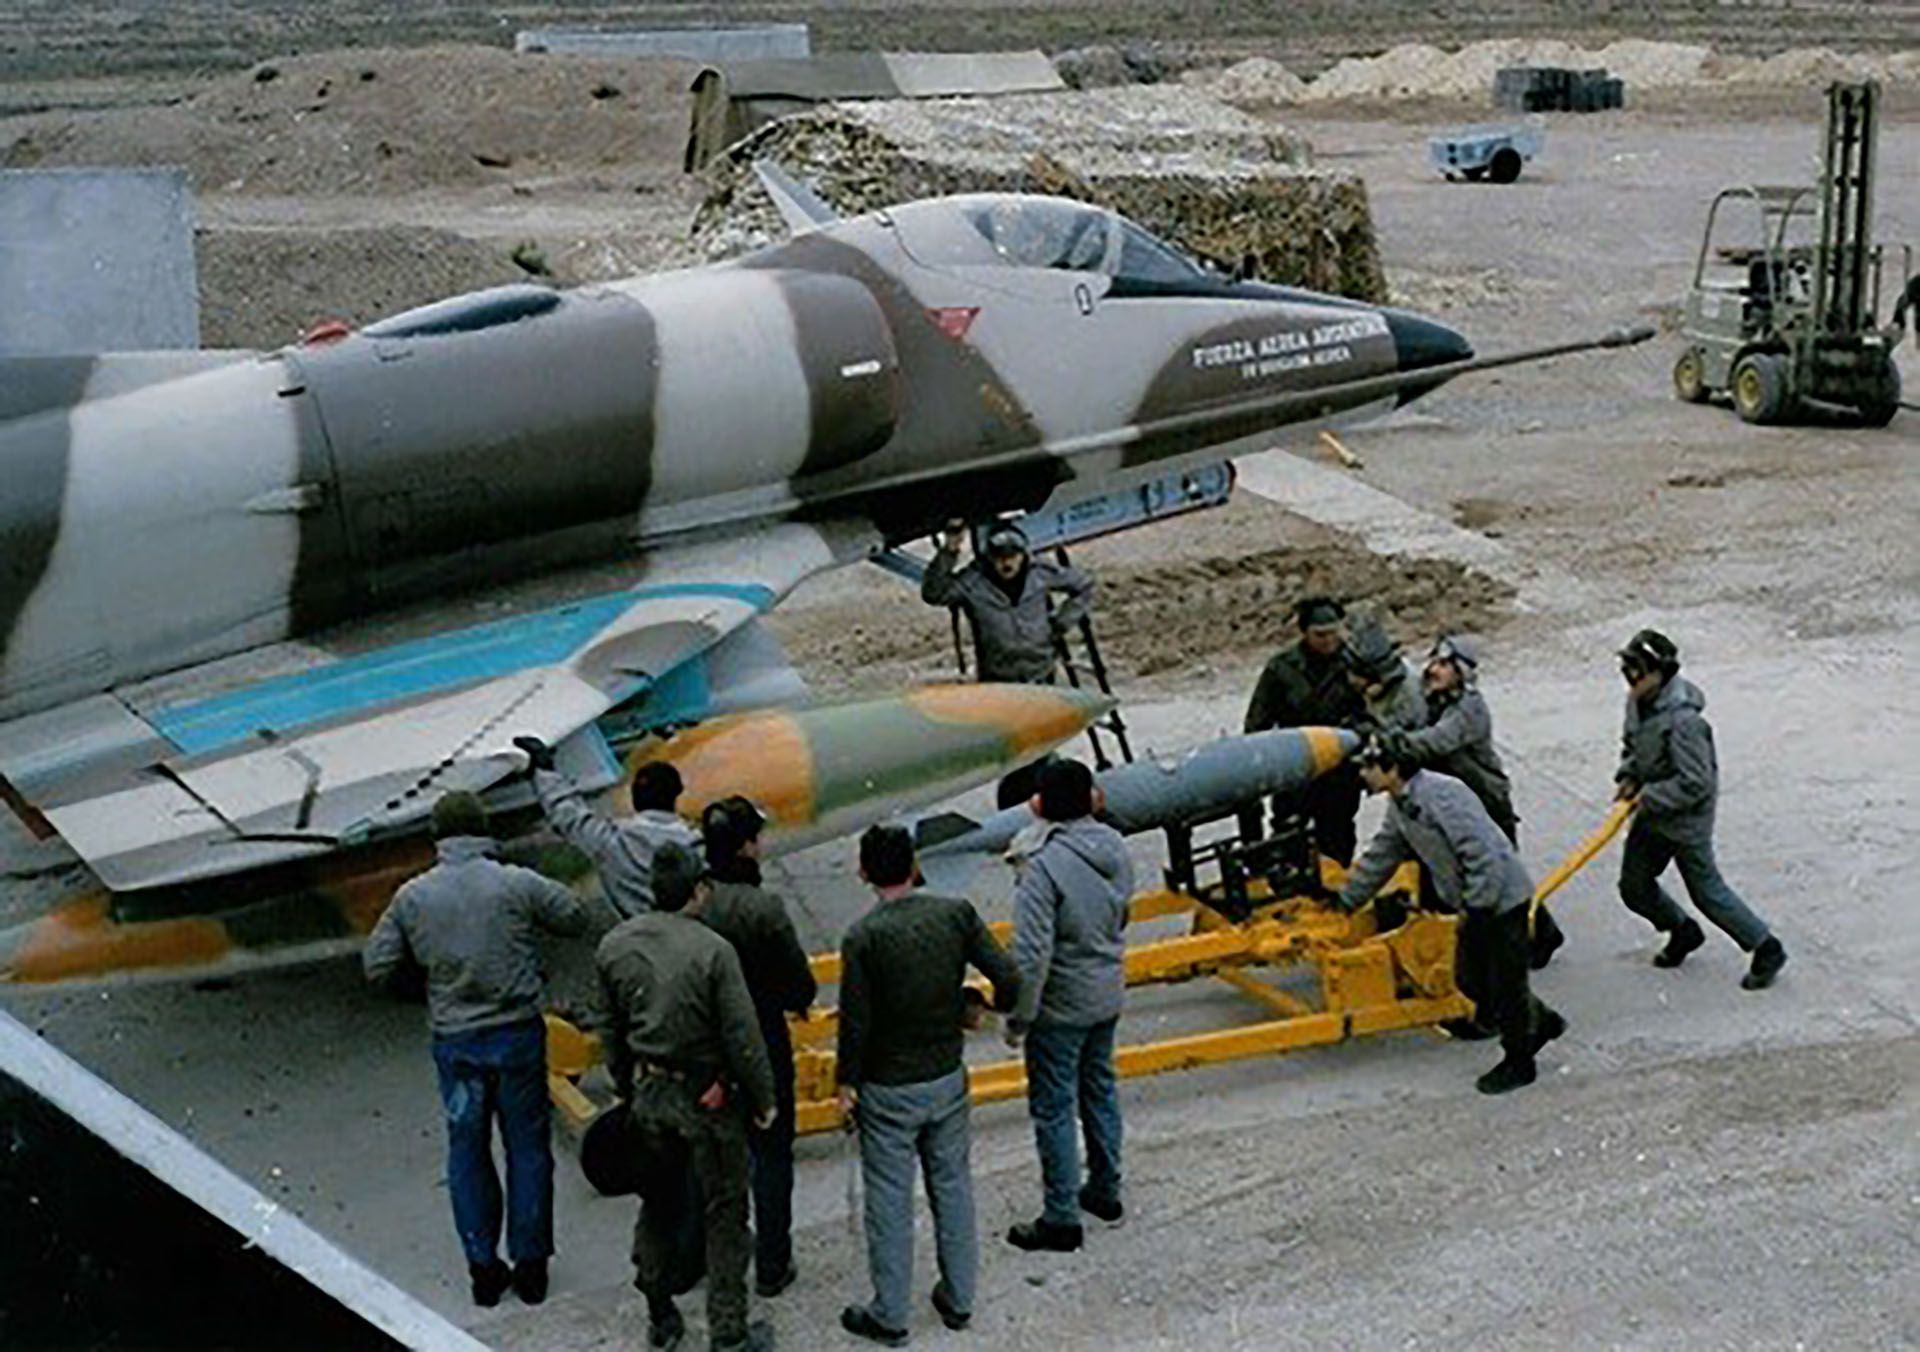 Los técnicos cargando las bombas de 250 kg en uno de los A4-C